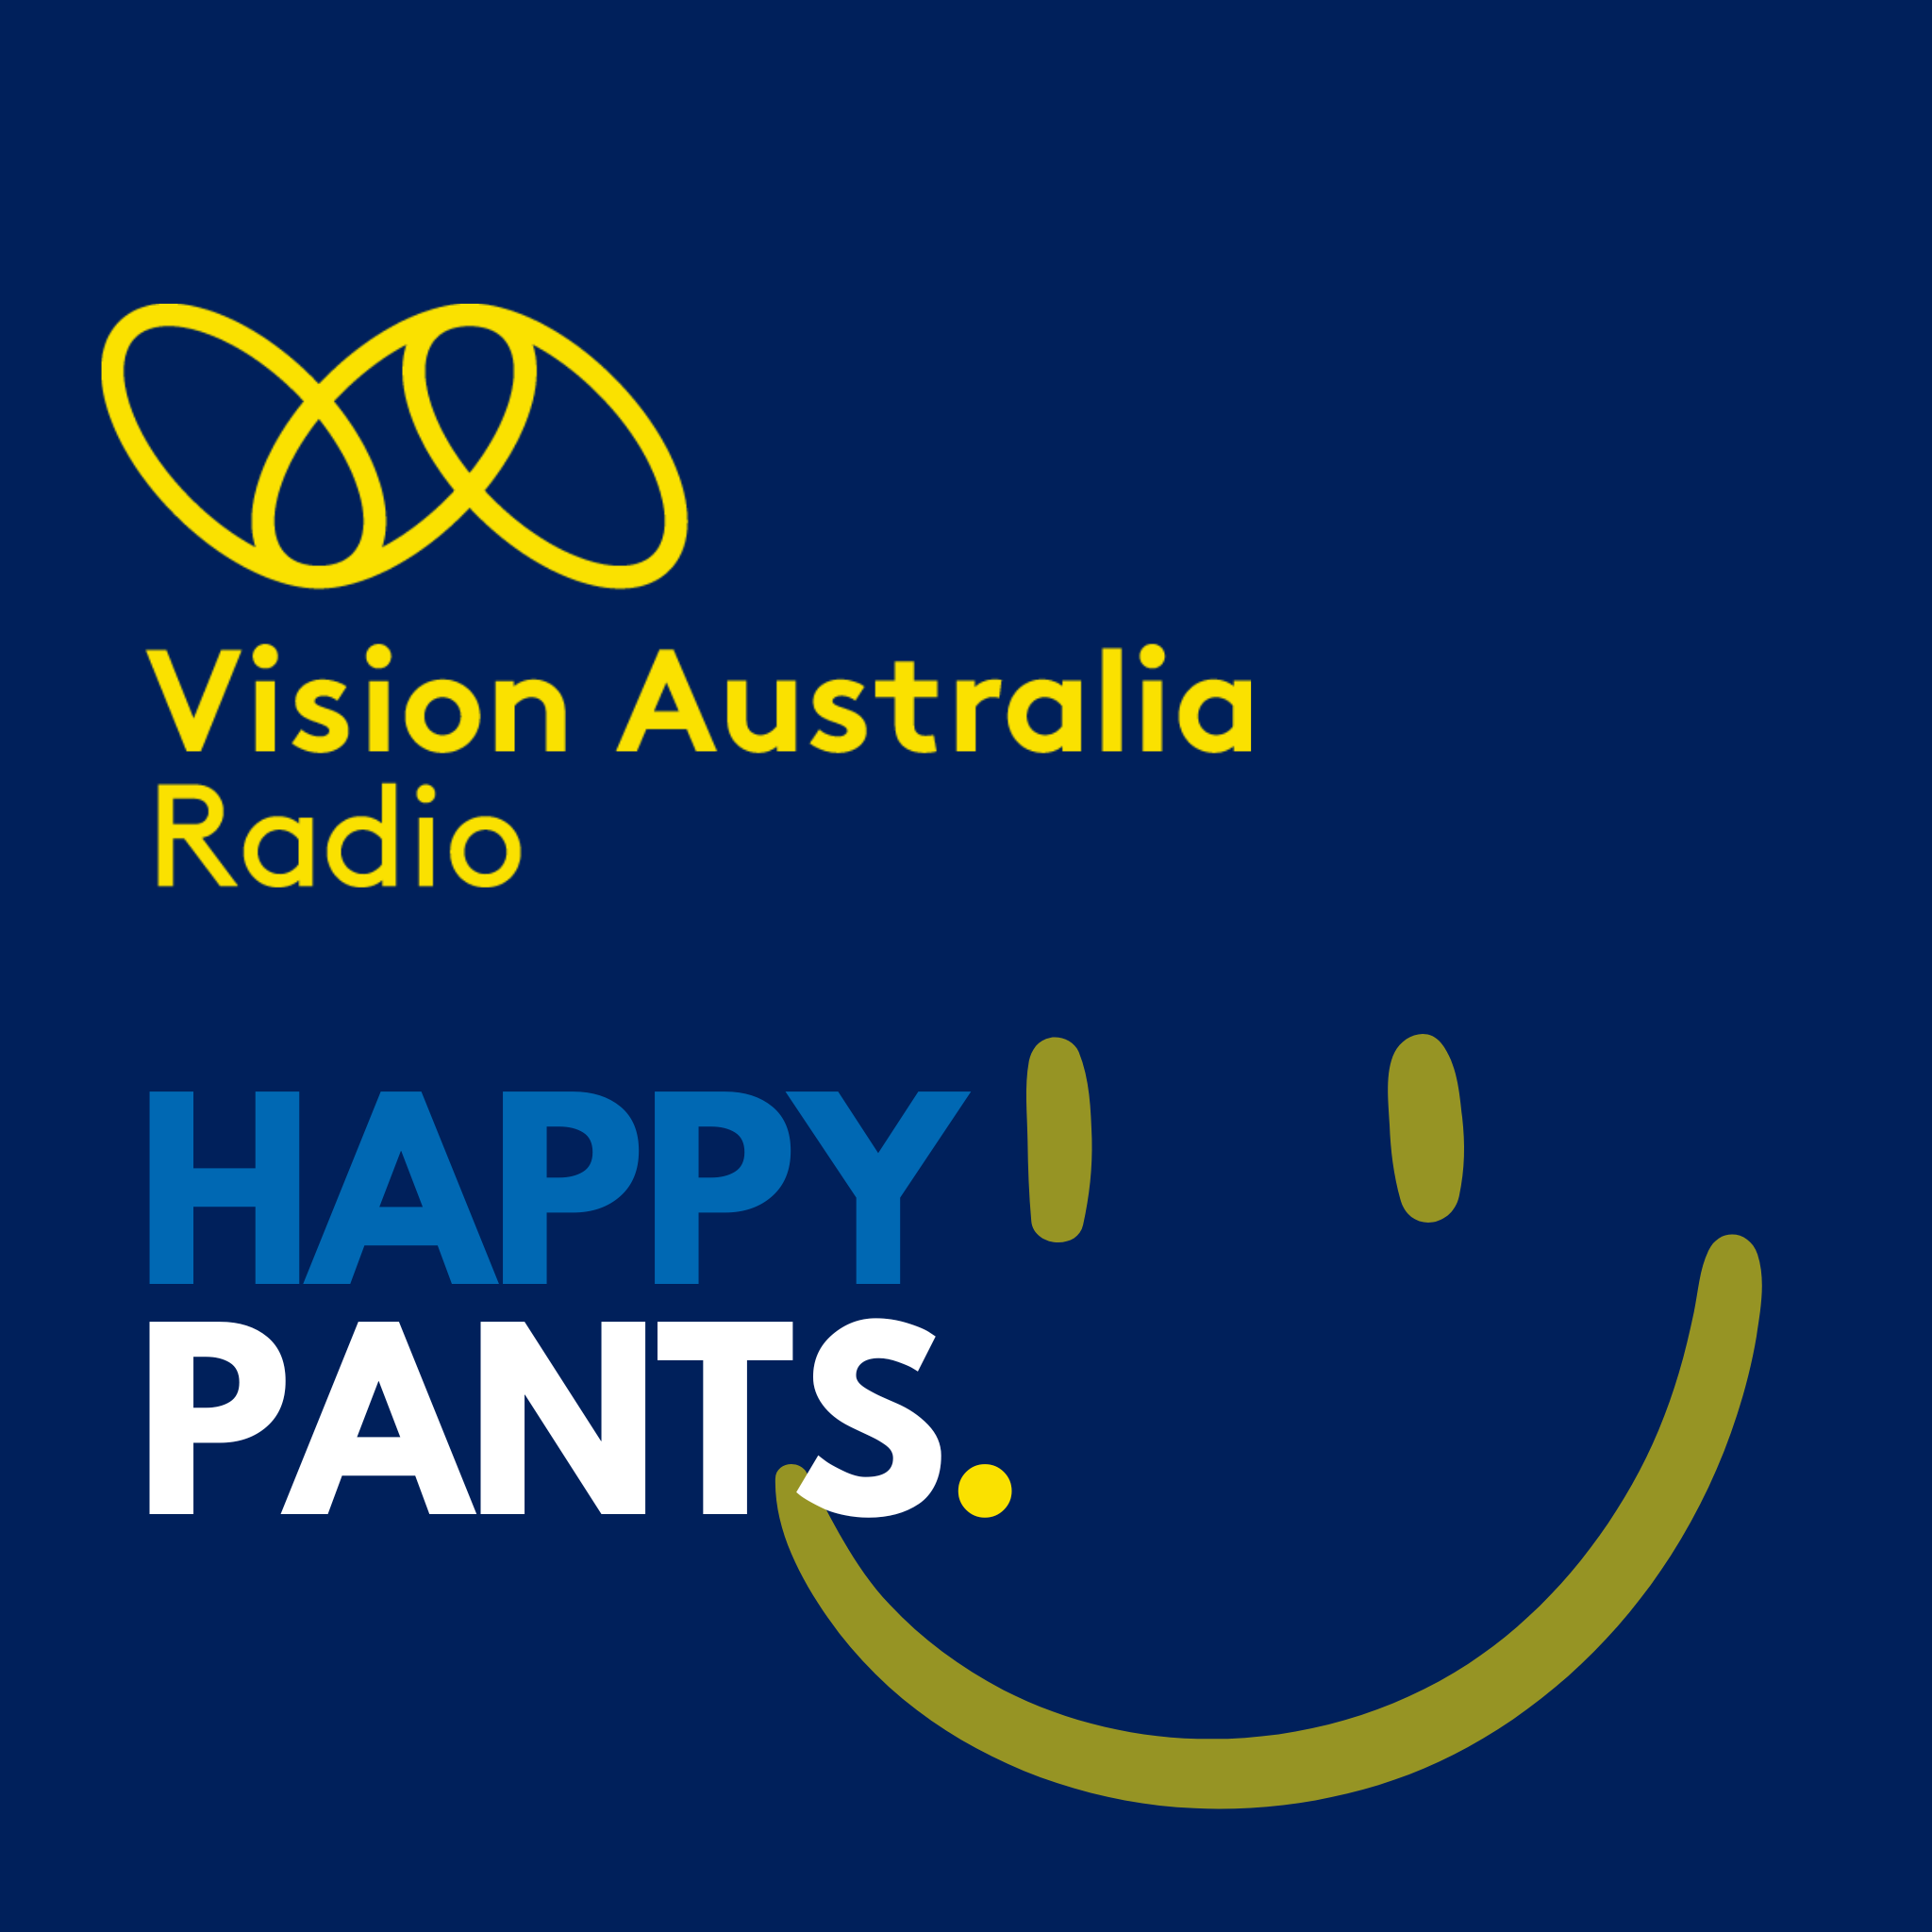 Happy Pants - January 6